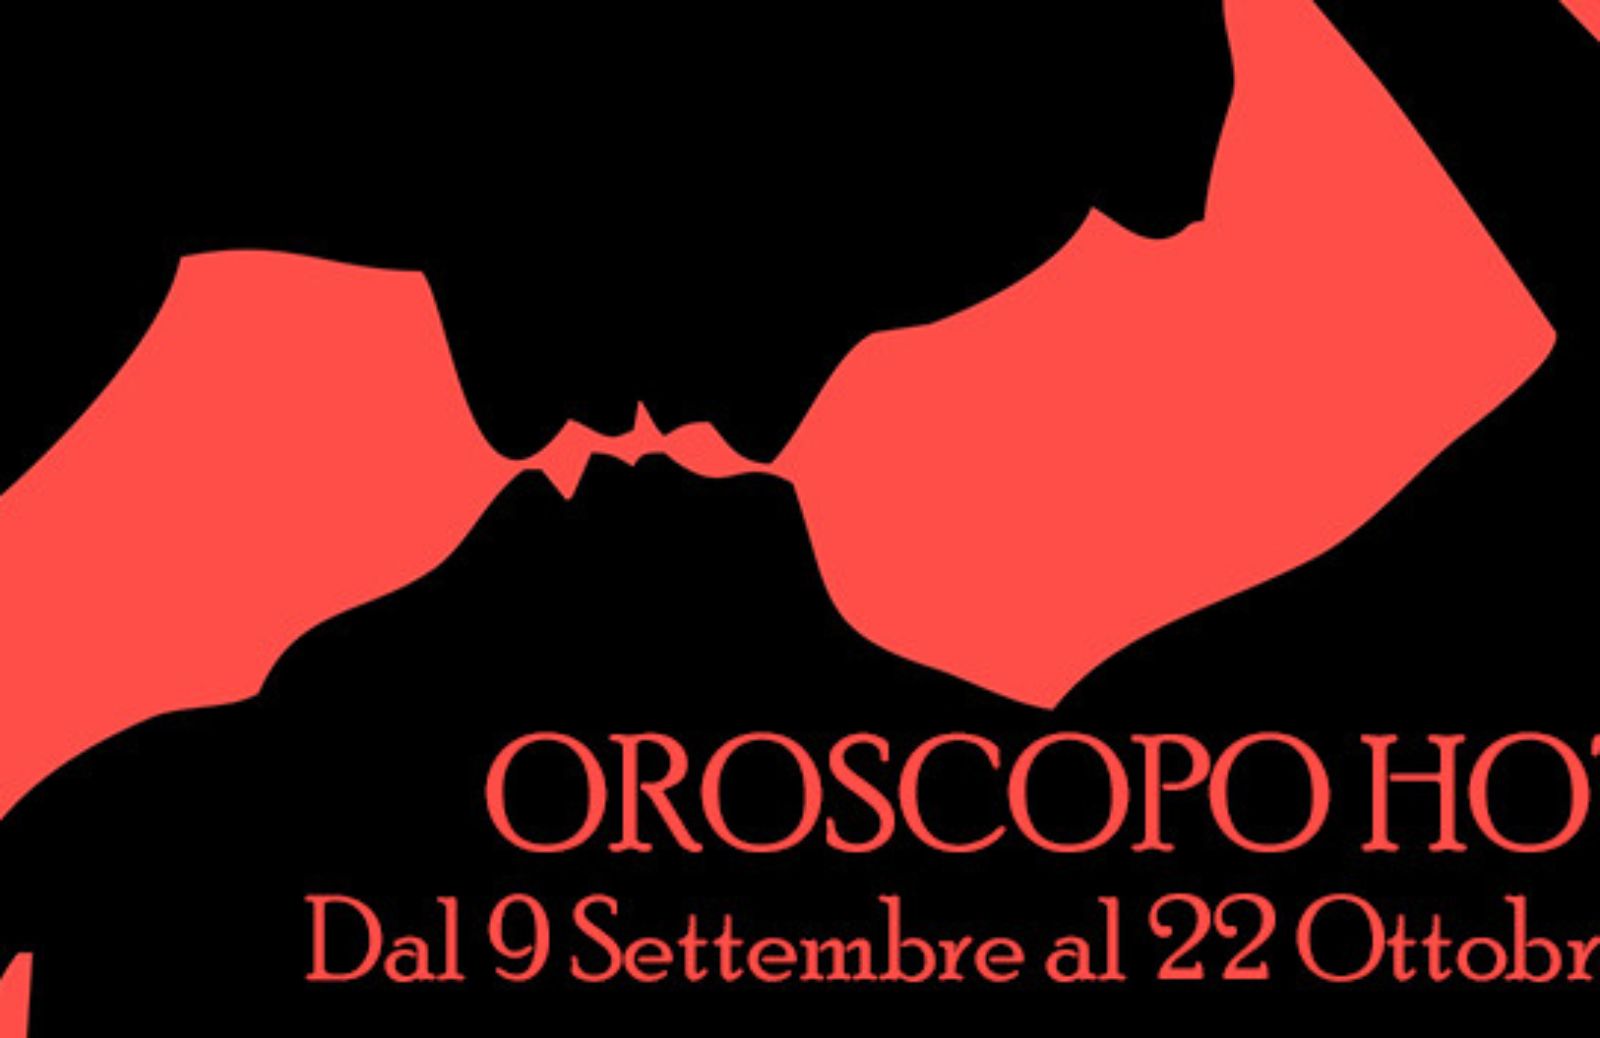 Oroscopo Hot: dal 9 settembre al 22 ottobre